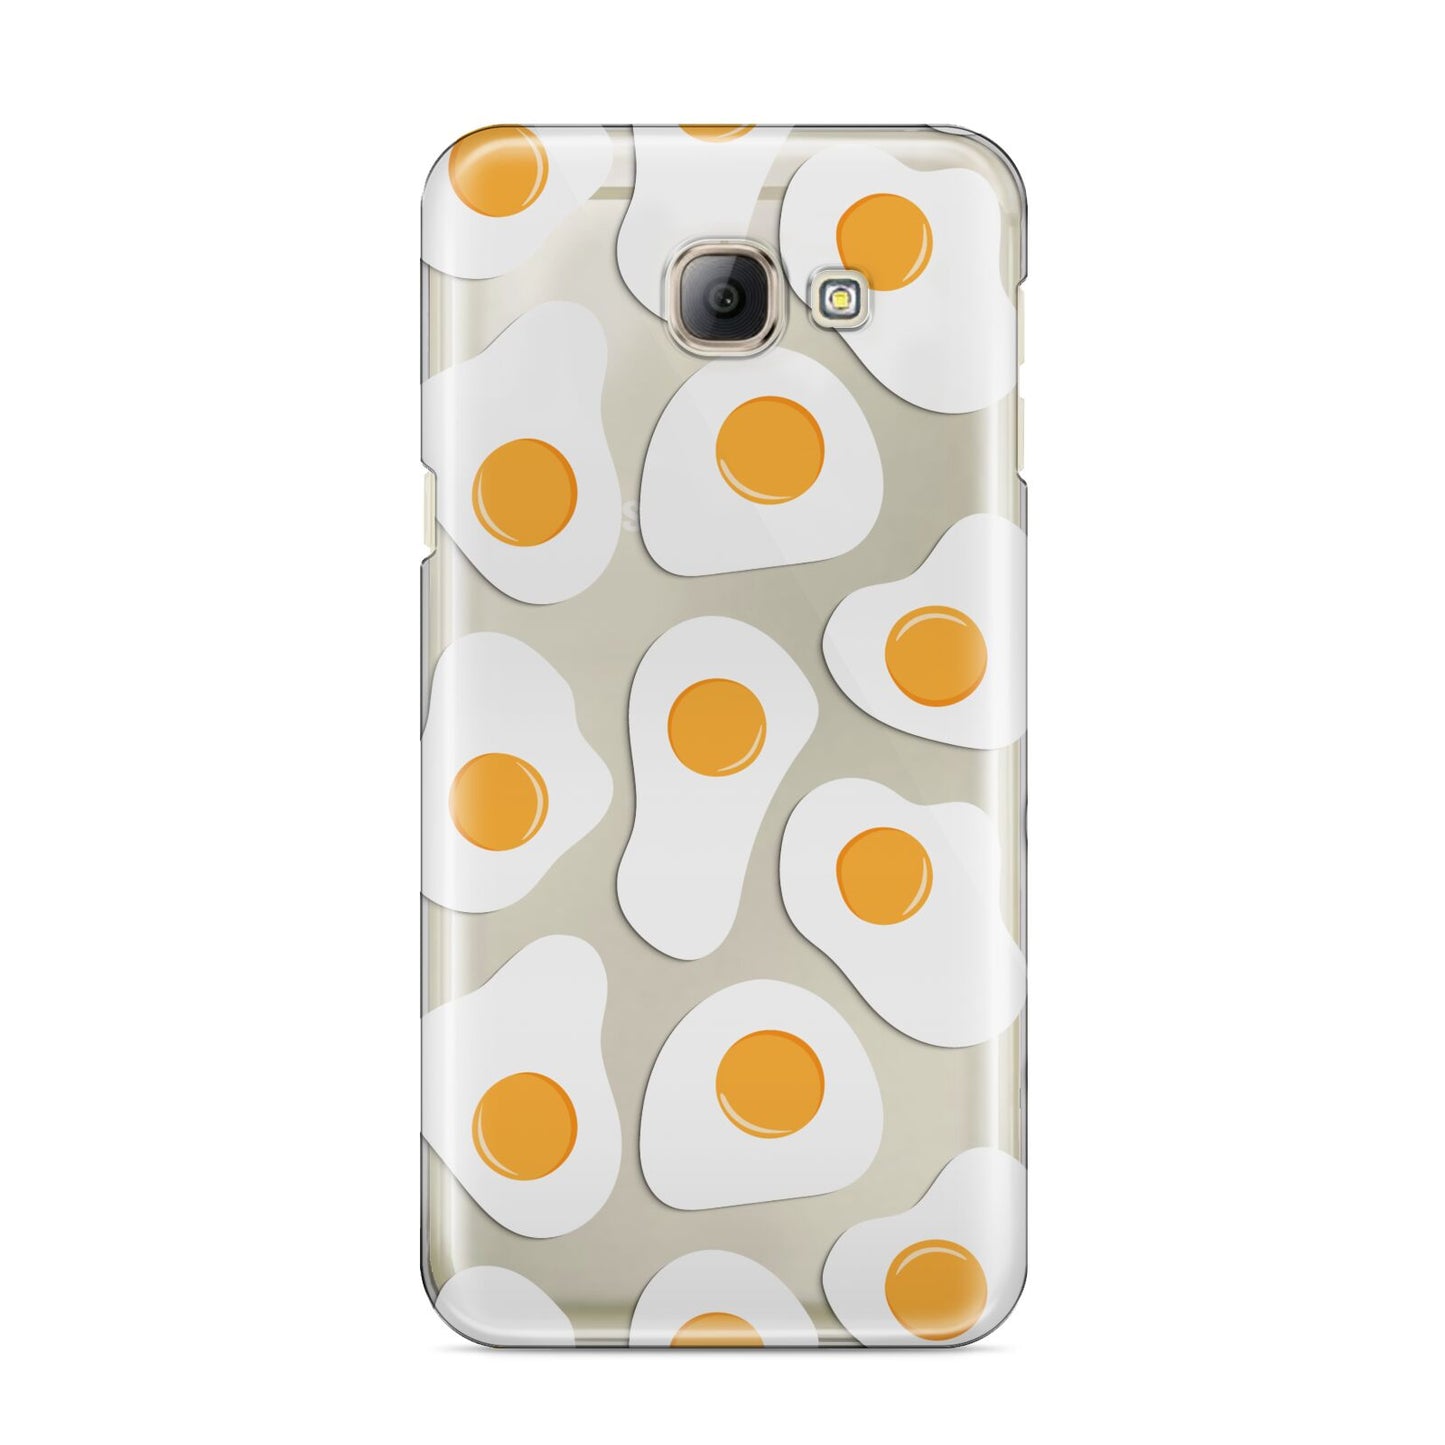 Fried Egg Samsung Galaxy A8 2016 Case